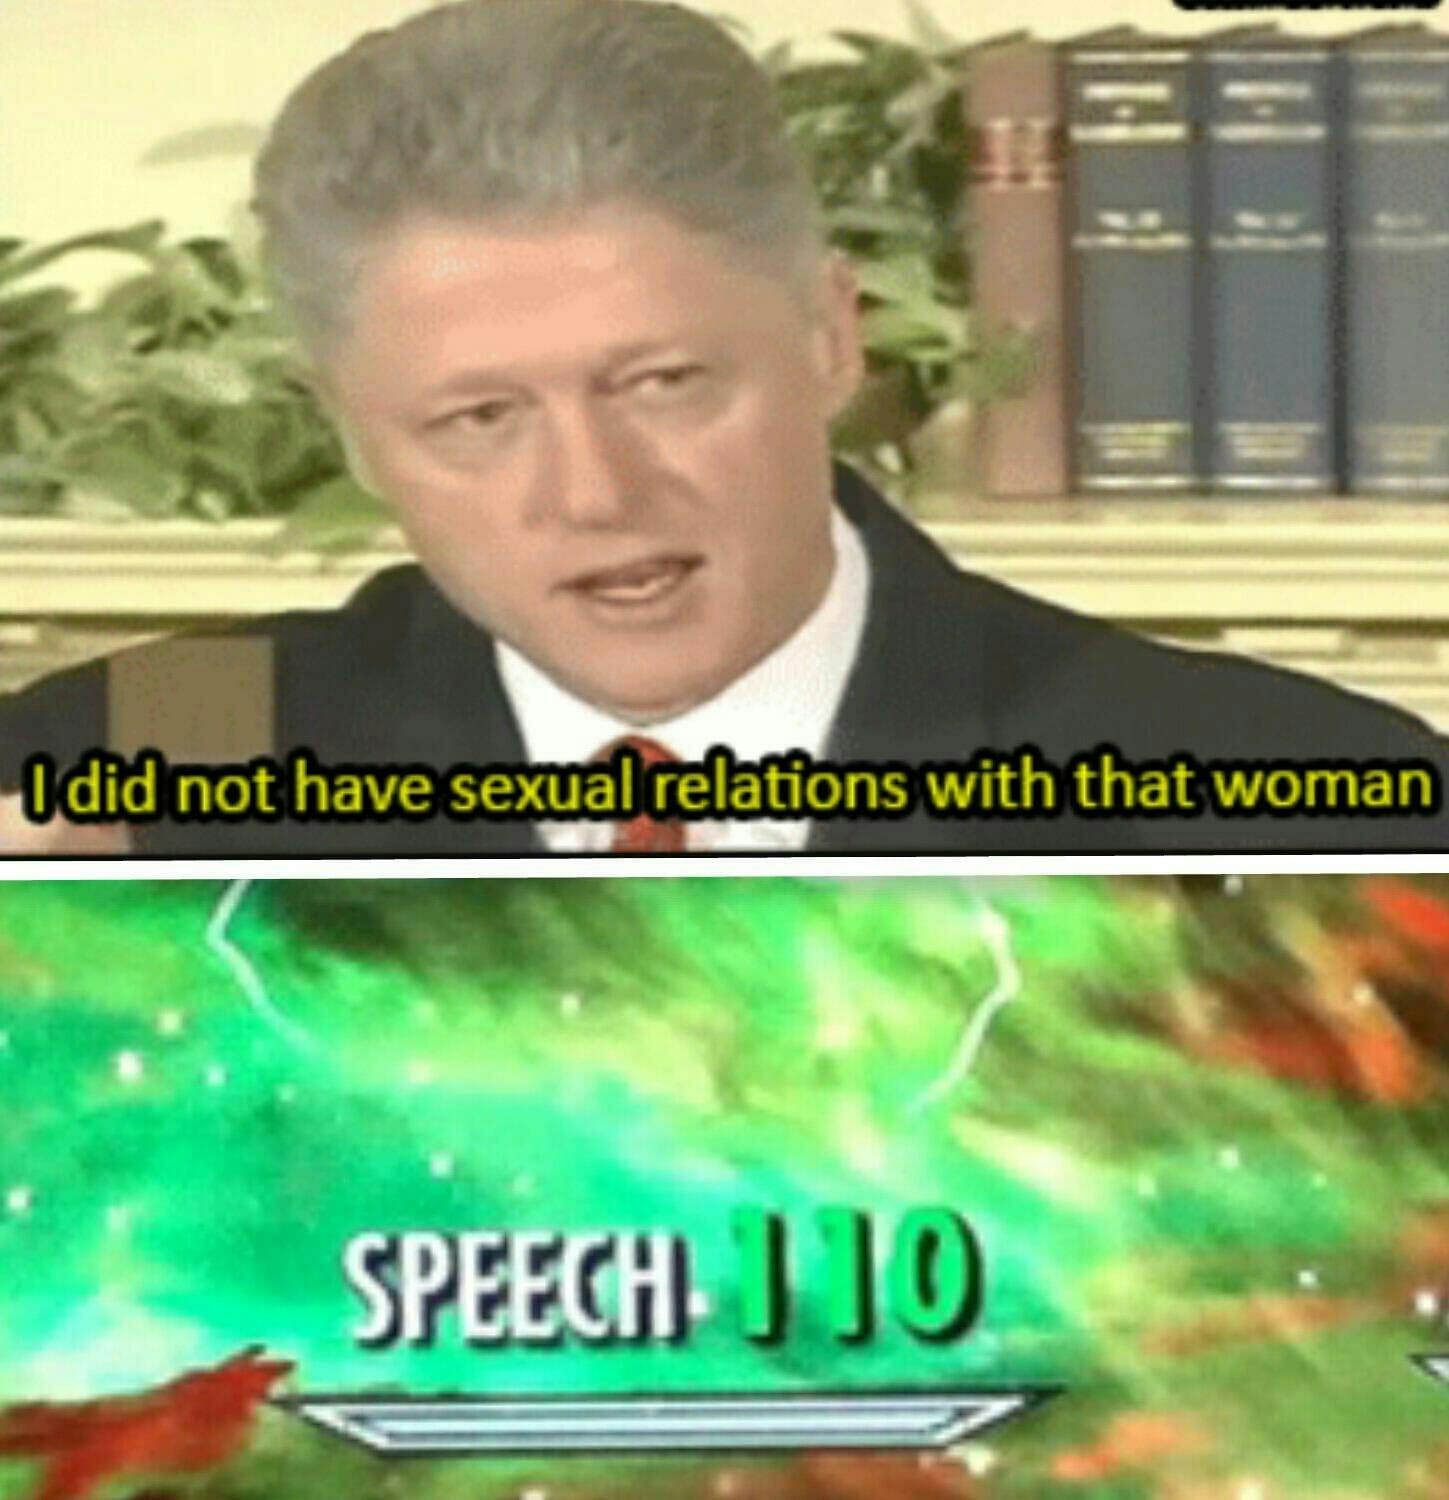 bill clinton skyrim speech meme